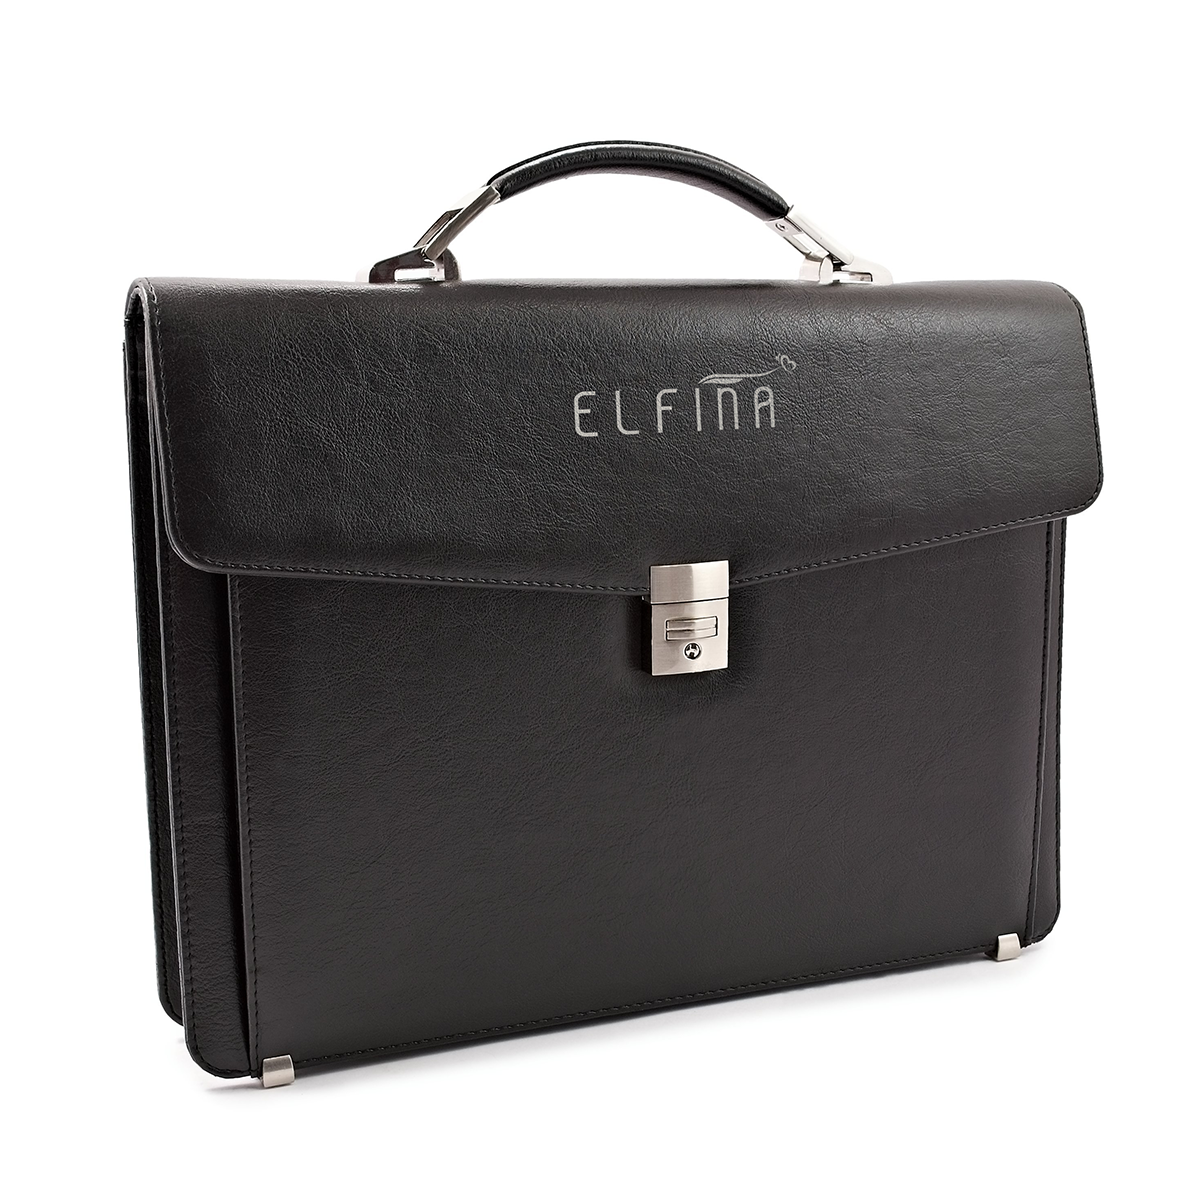 ELFINA Briefcases for Women & Men